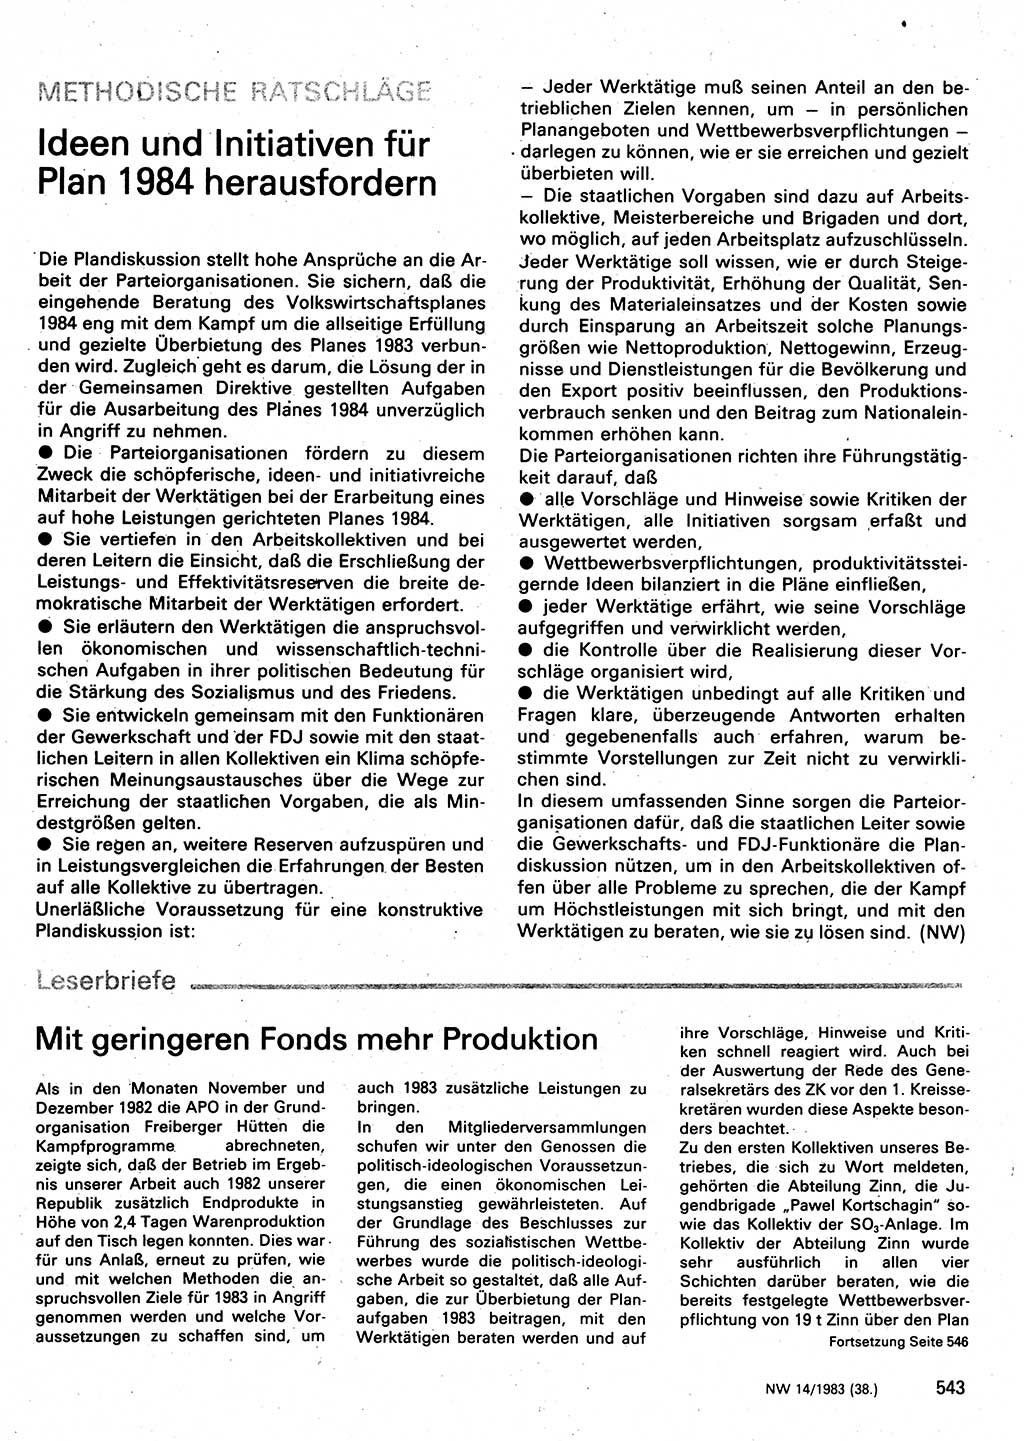 Neuer Weg (NW), Organ des Zentralkomitees (ZK) der SED (Sozialistische Einheitspartei Deutschlands) für Fragen des Parteilebens, 38. Jahrgang [Deutsche Demokratische Republik (DDR)] 1983, Seite 543 (NW ZK SED DDR 1983, S. 543)